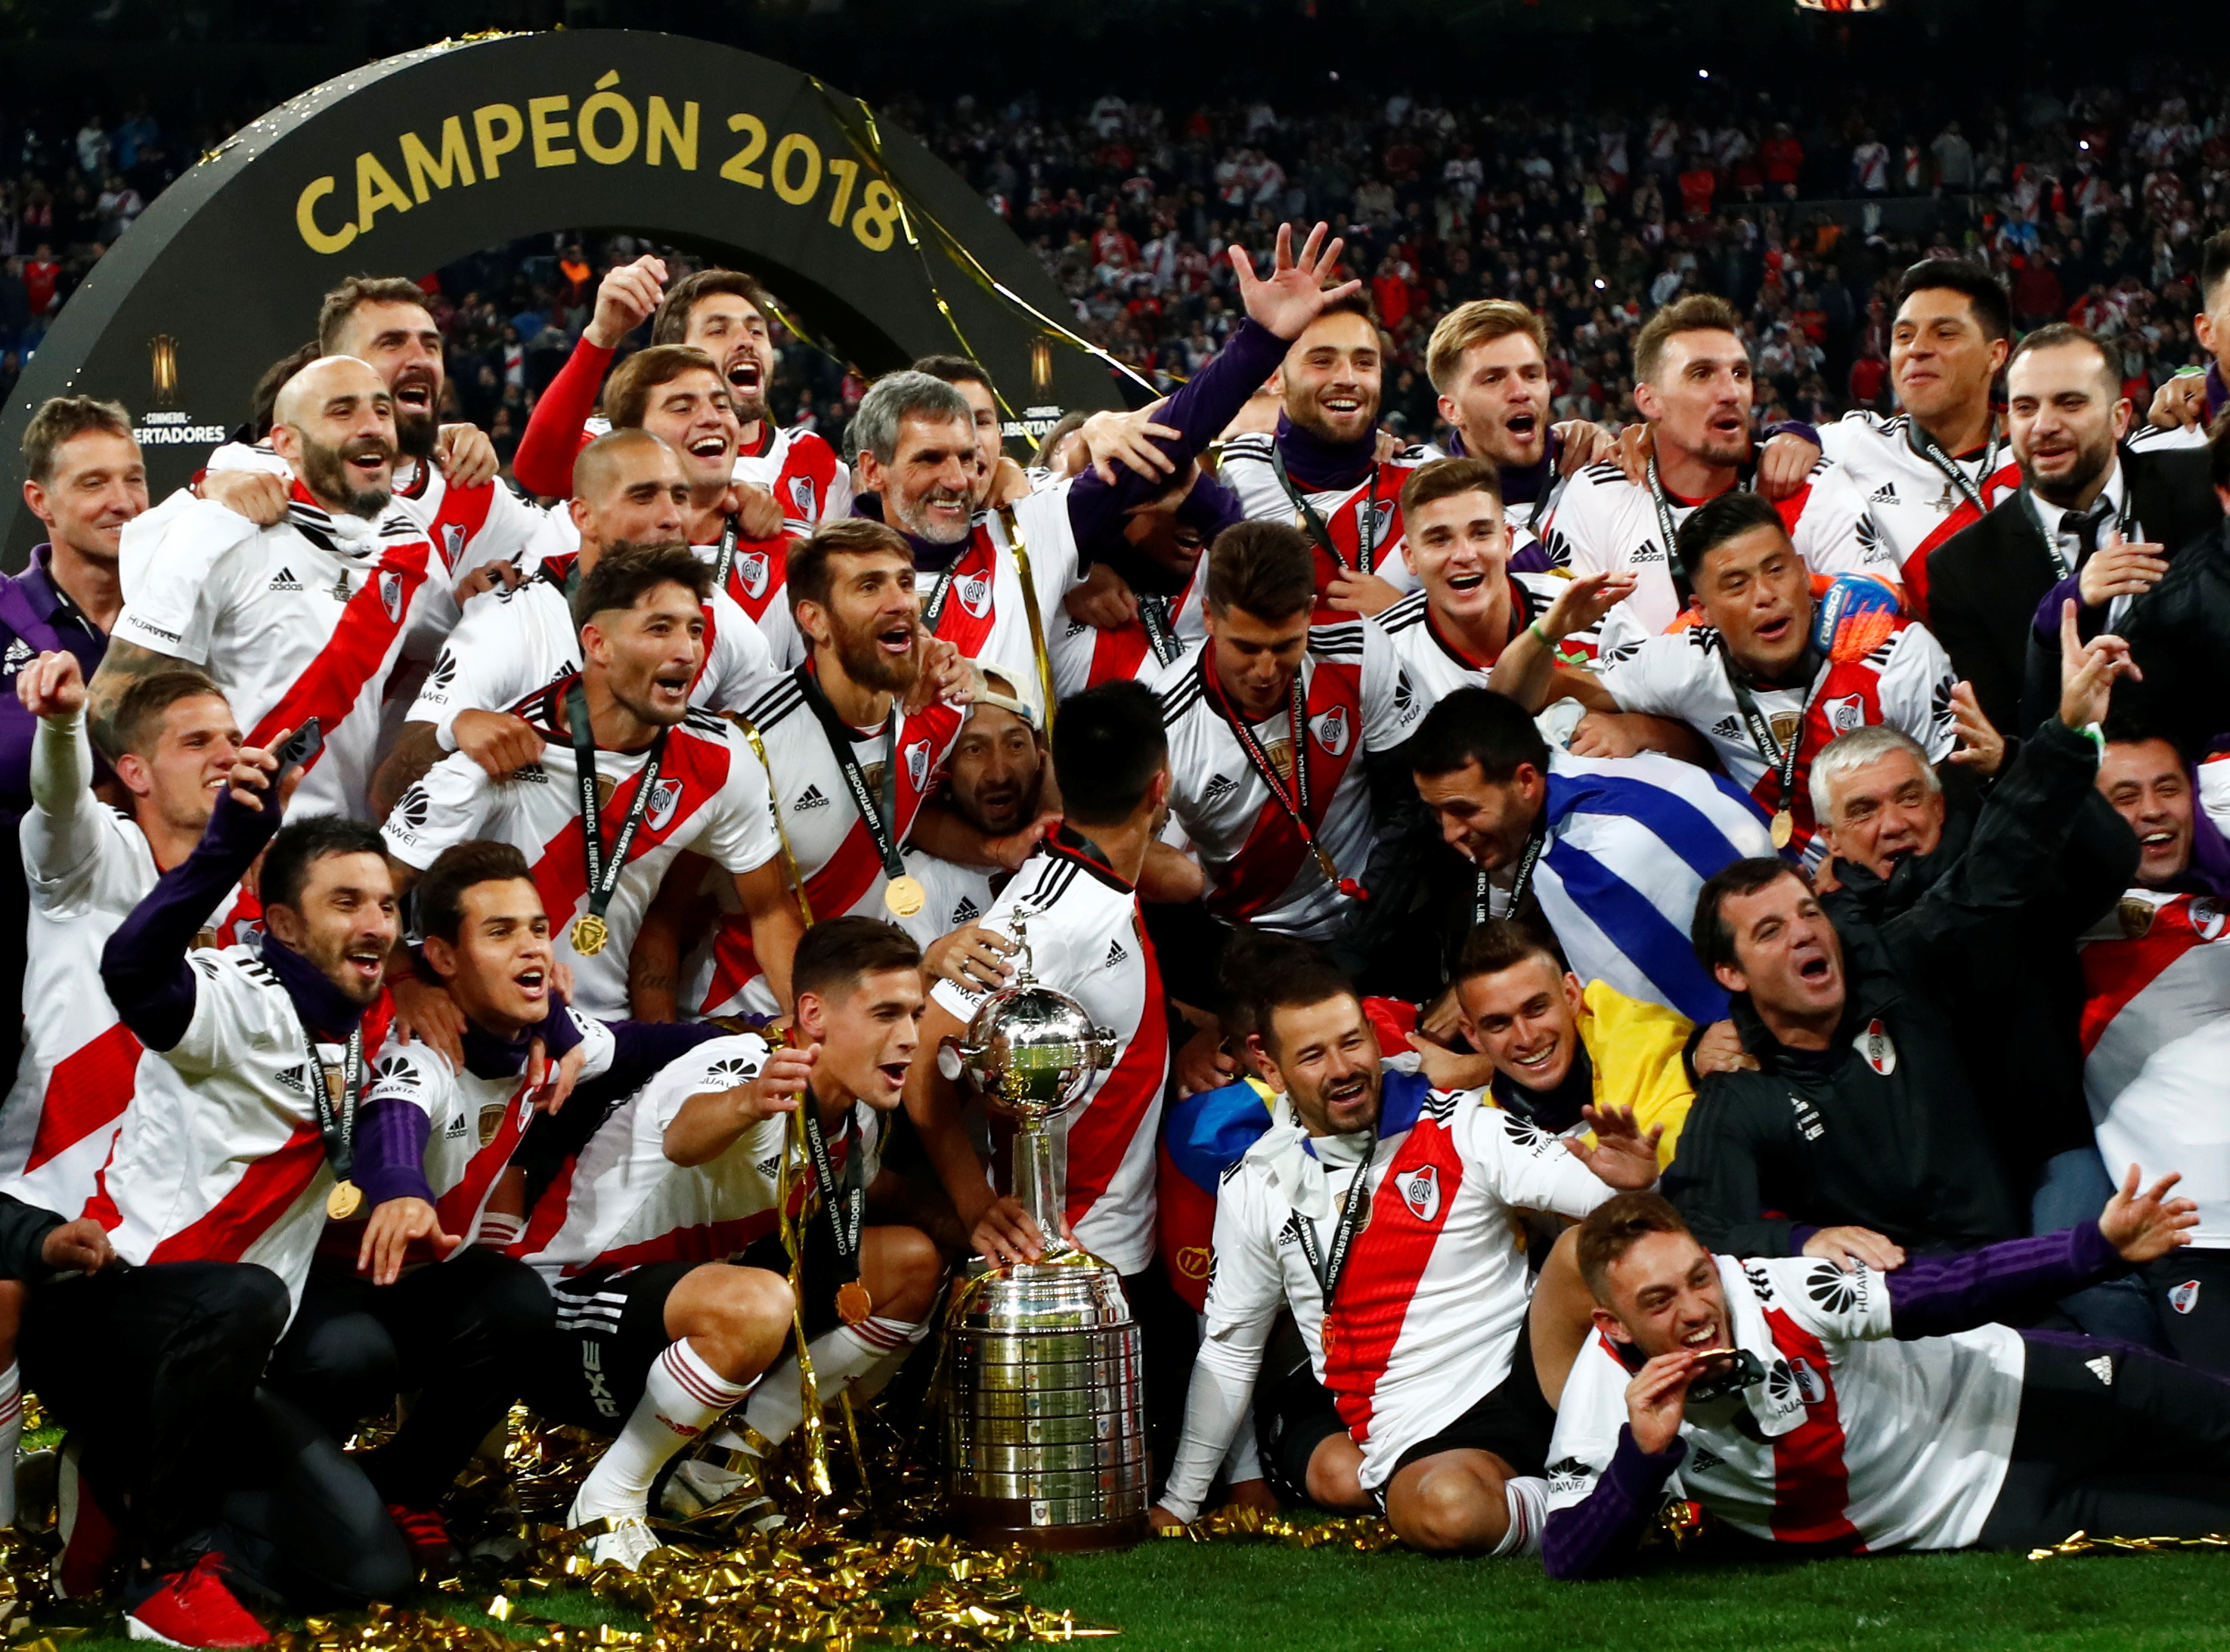 River Plate campeón Copa Libertadores 2018